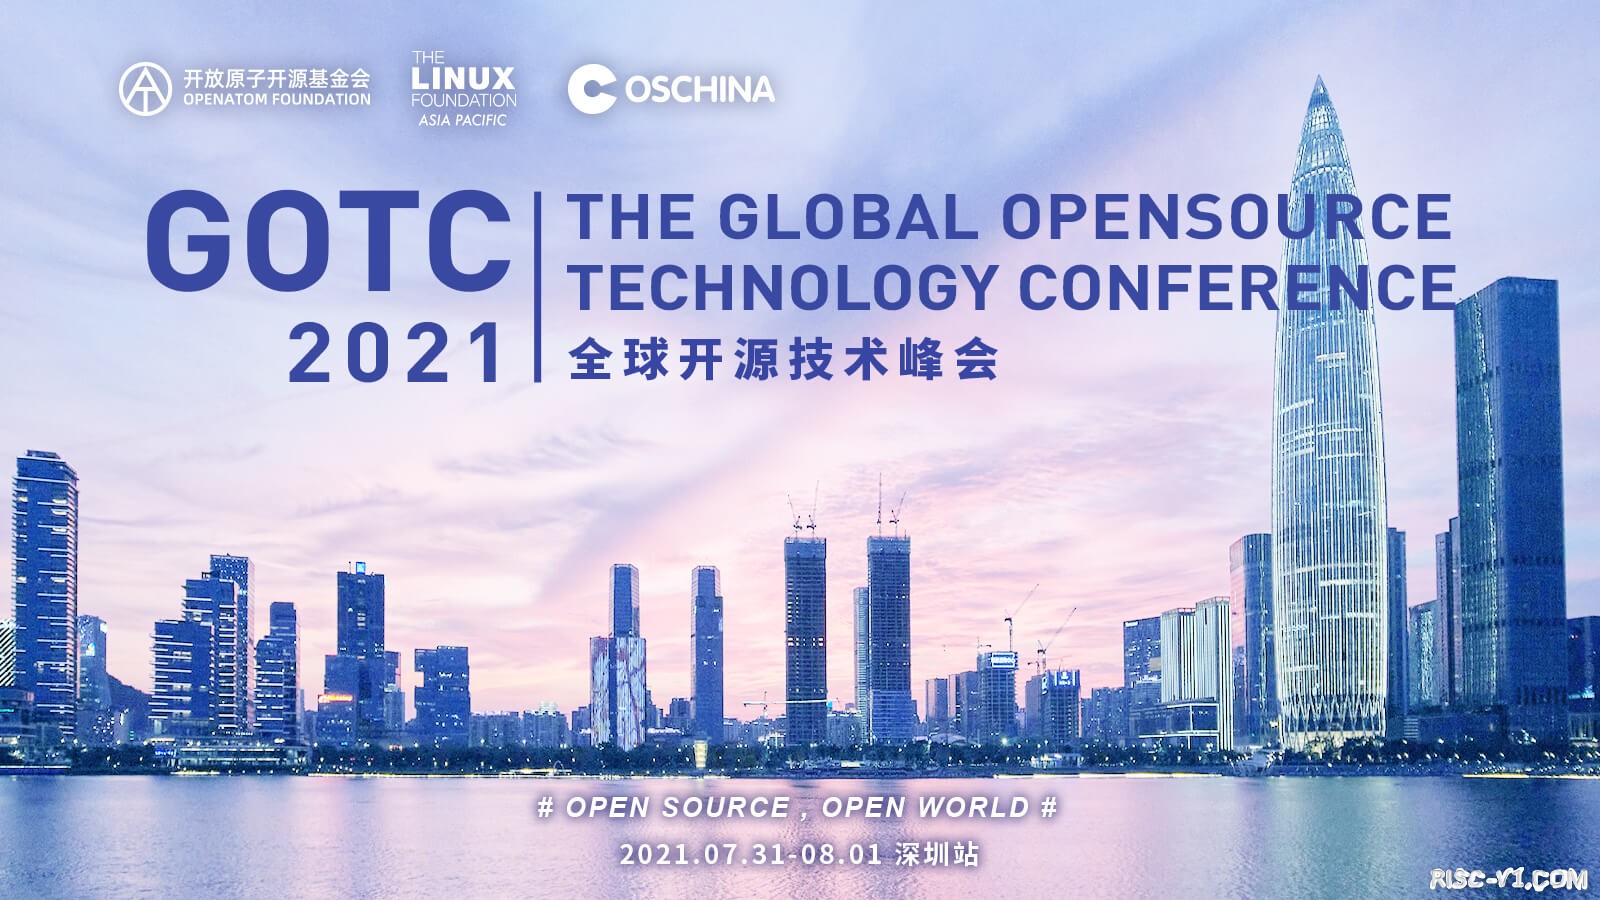 社区公告-2021年全球开源技术峰会GOTC演示文稿及视频回放risc-v单片机中文社区(1)